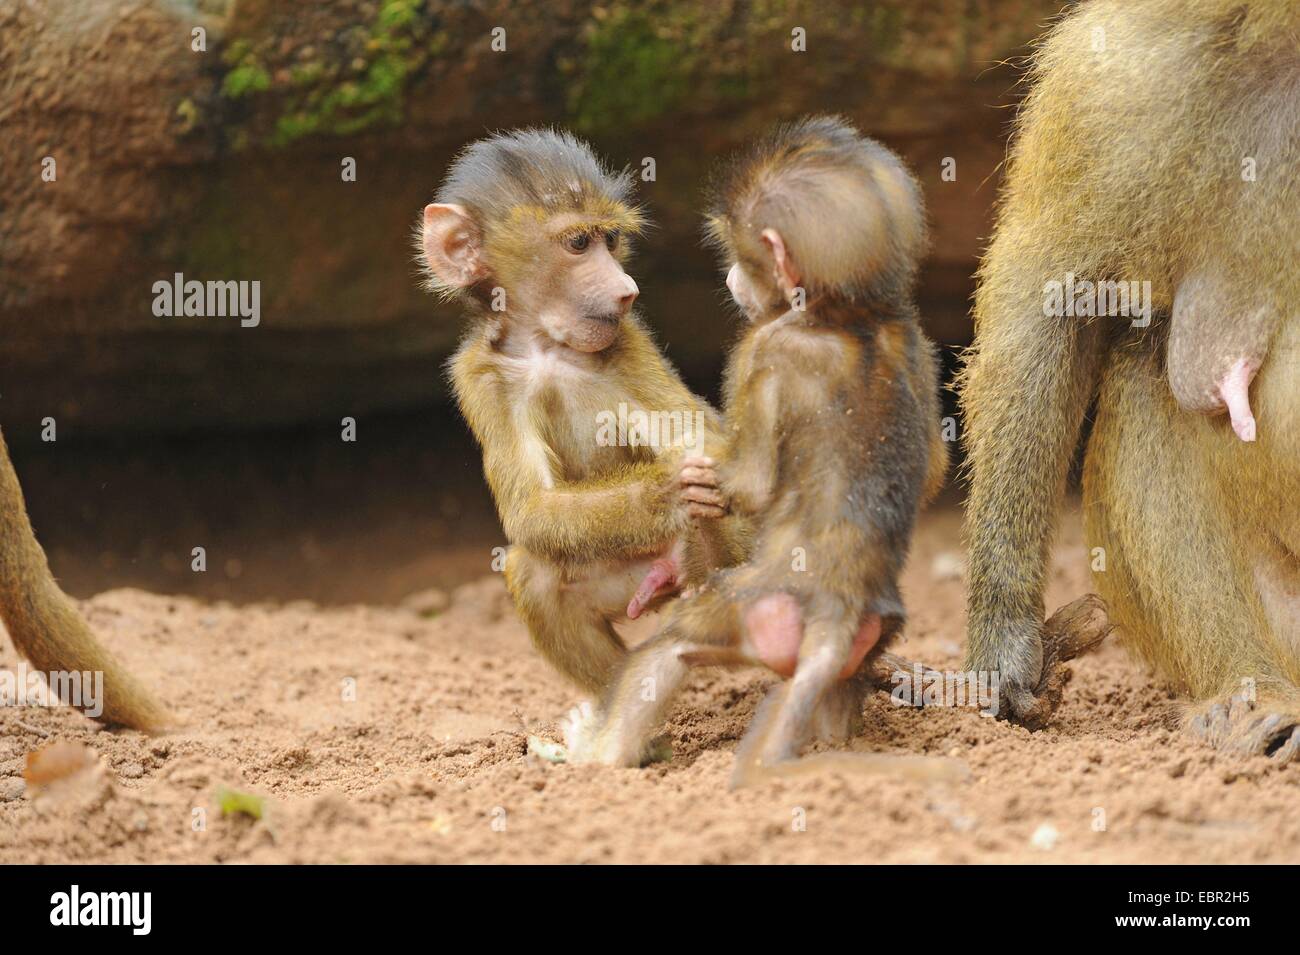 Babbuino della Guinea, Western babbuino (Papio papio), due scimmie littly eying su di un altro Foto Stock